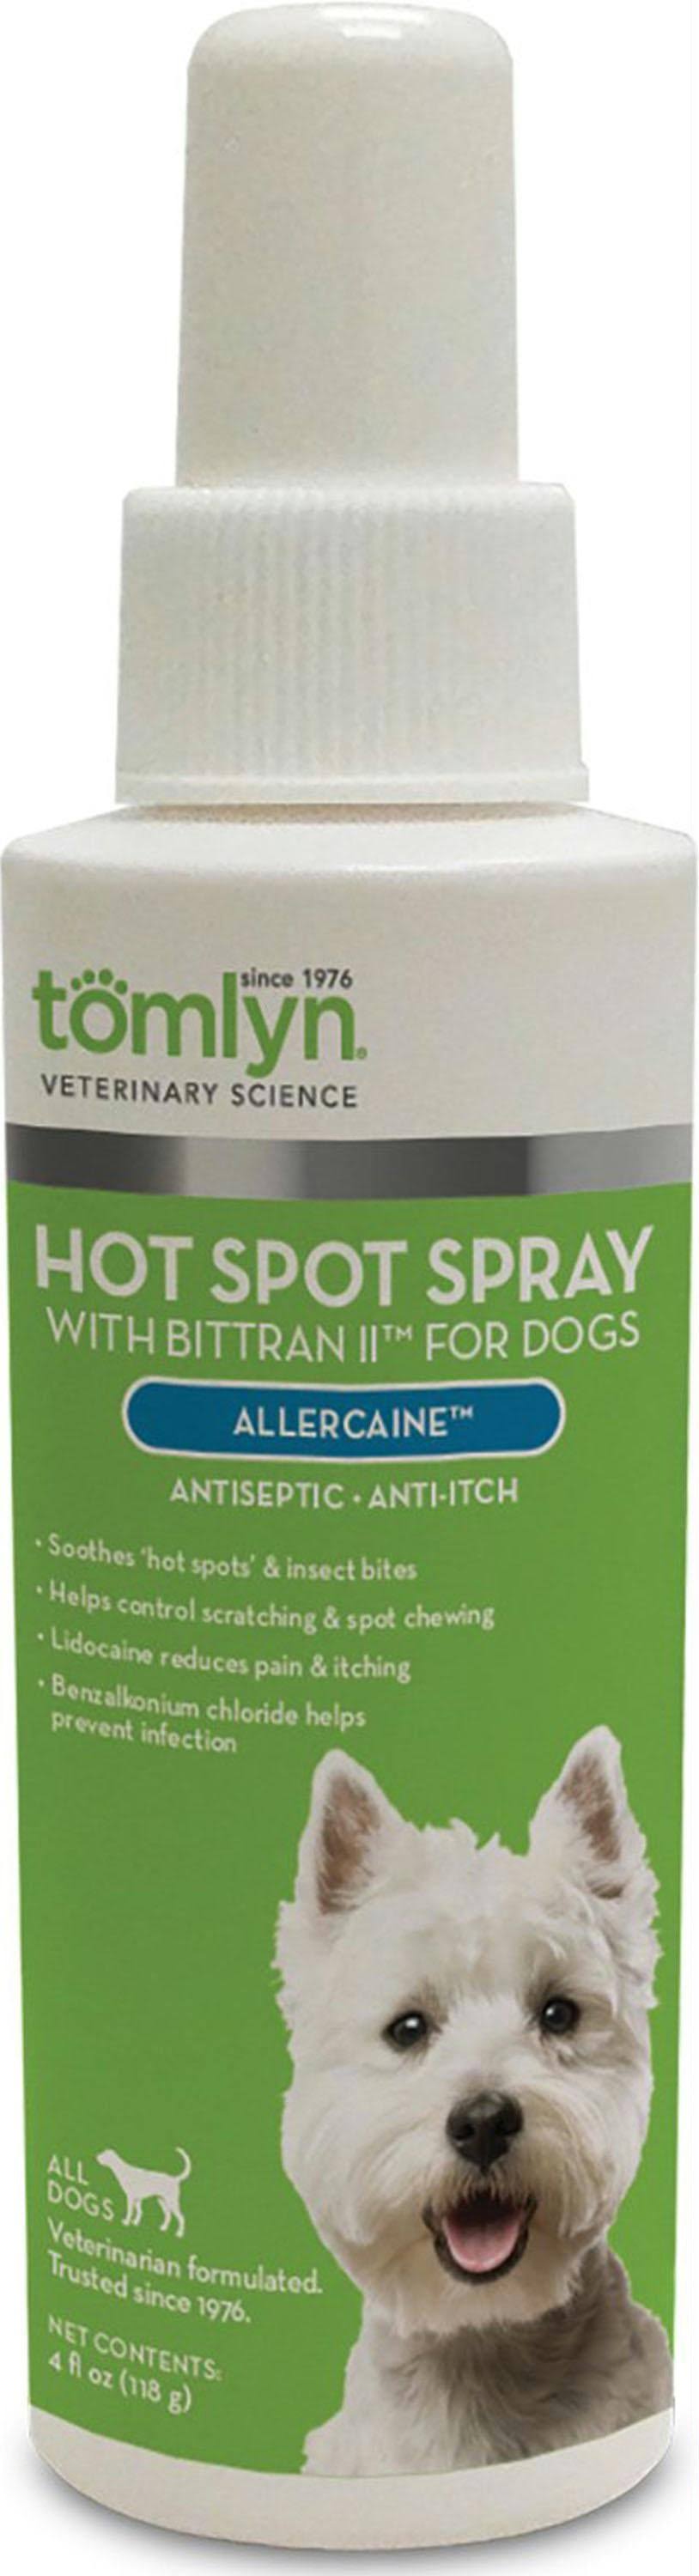 Tomlyn Hot Spot Spray For Dogs Allercaine Spray